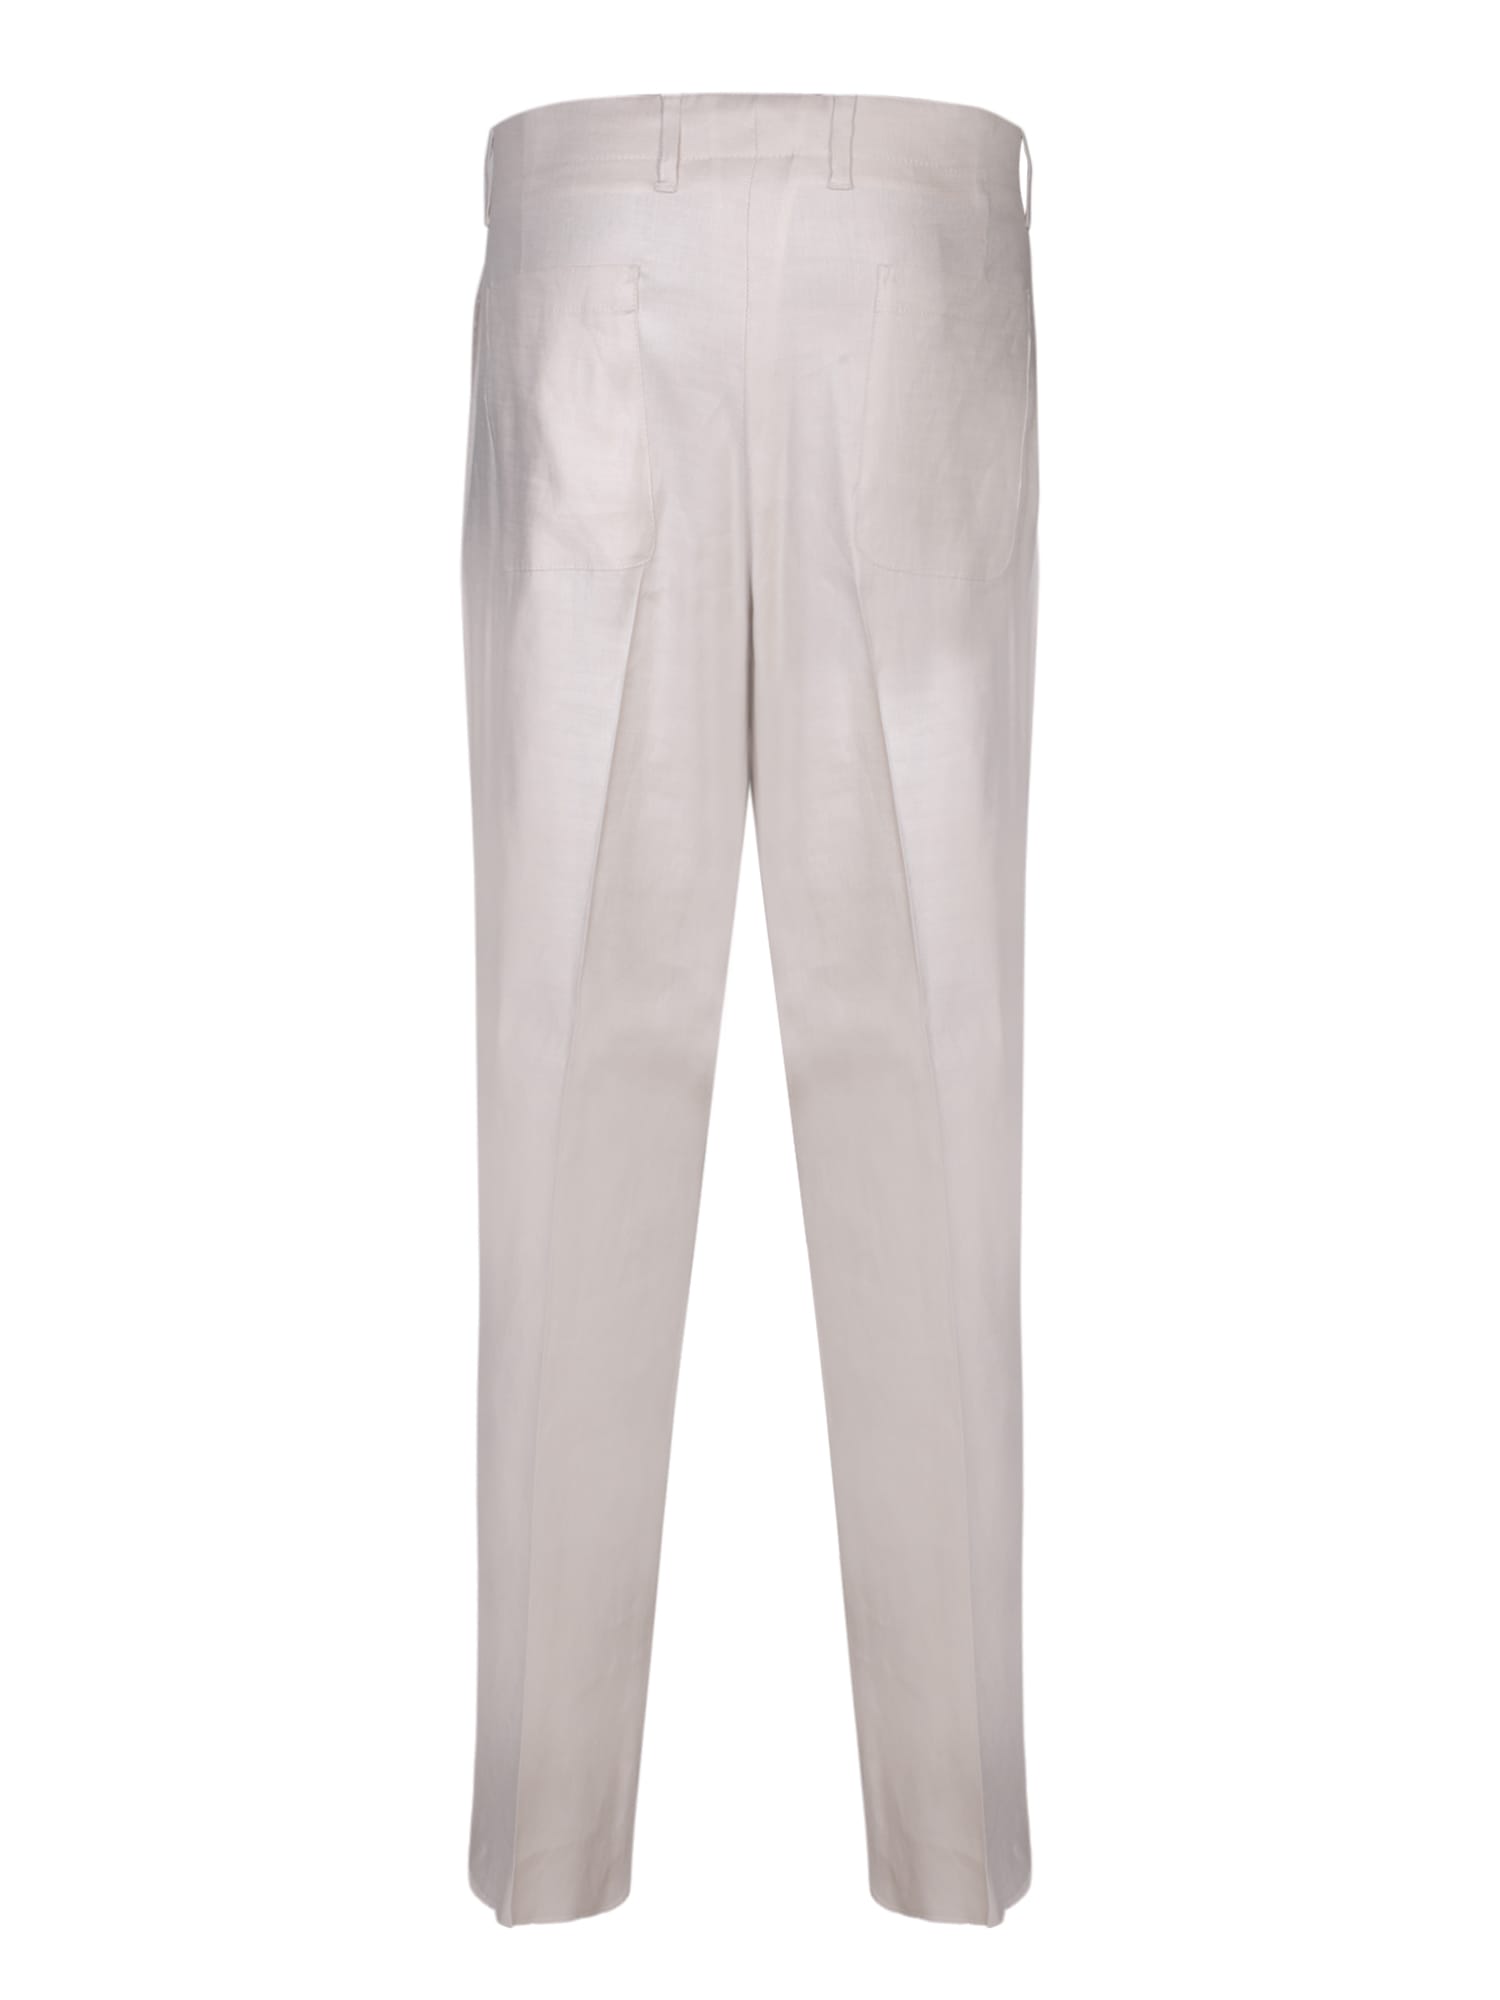 Shop Lardini Atos White Trousers